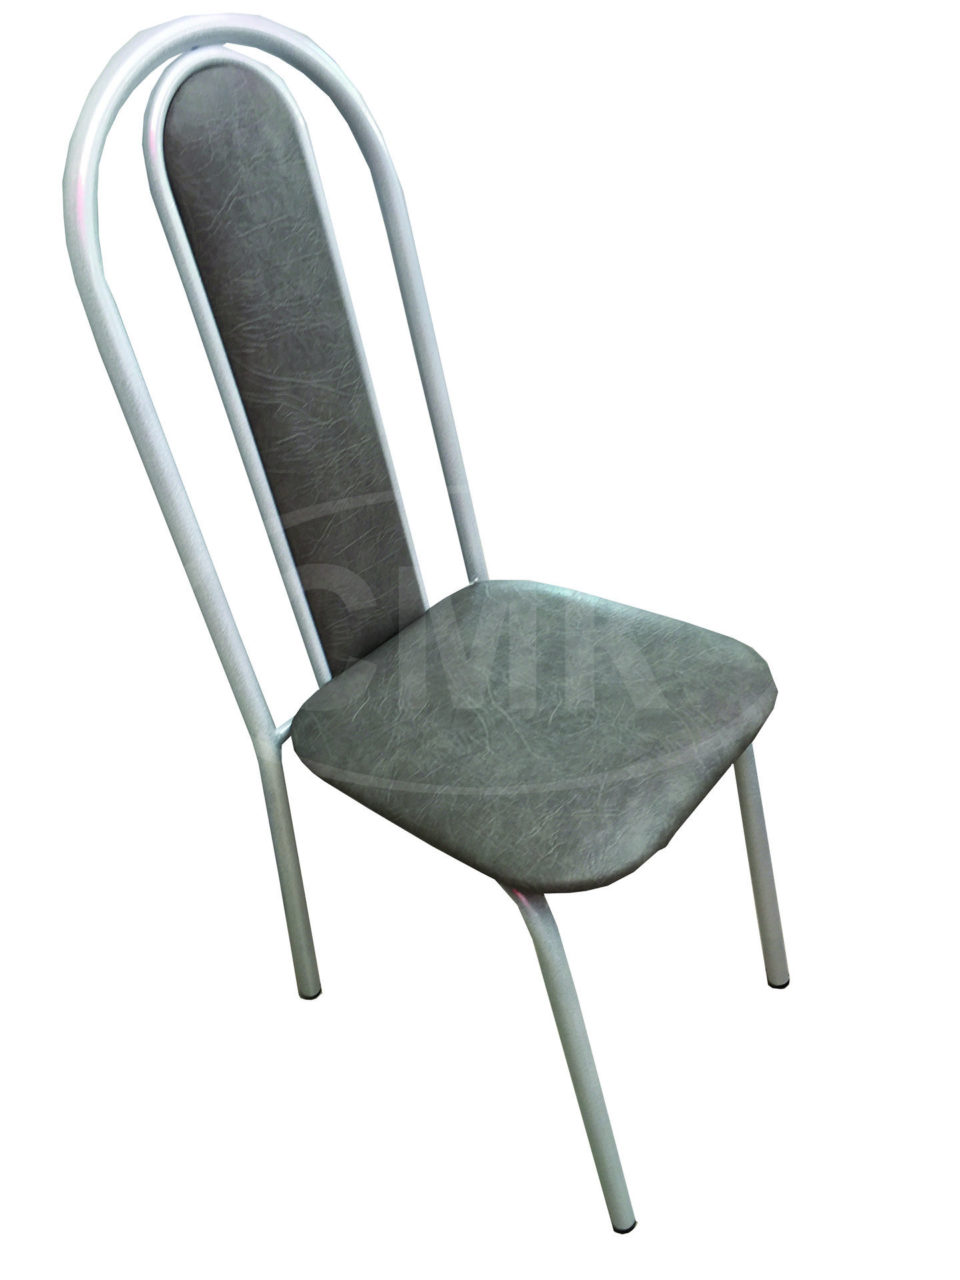 Стул на металлокаркасе СМК-0021 с мягкой высокой спинкой (каркас цвет белый, сиденье искусственная кожа цвет серый).